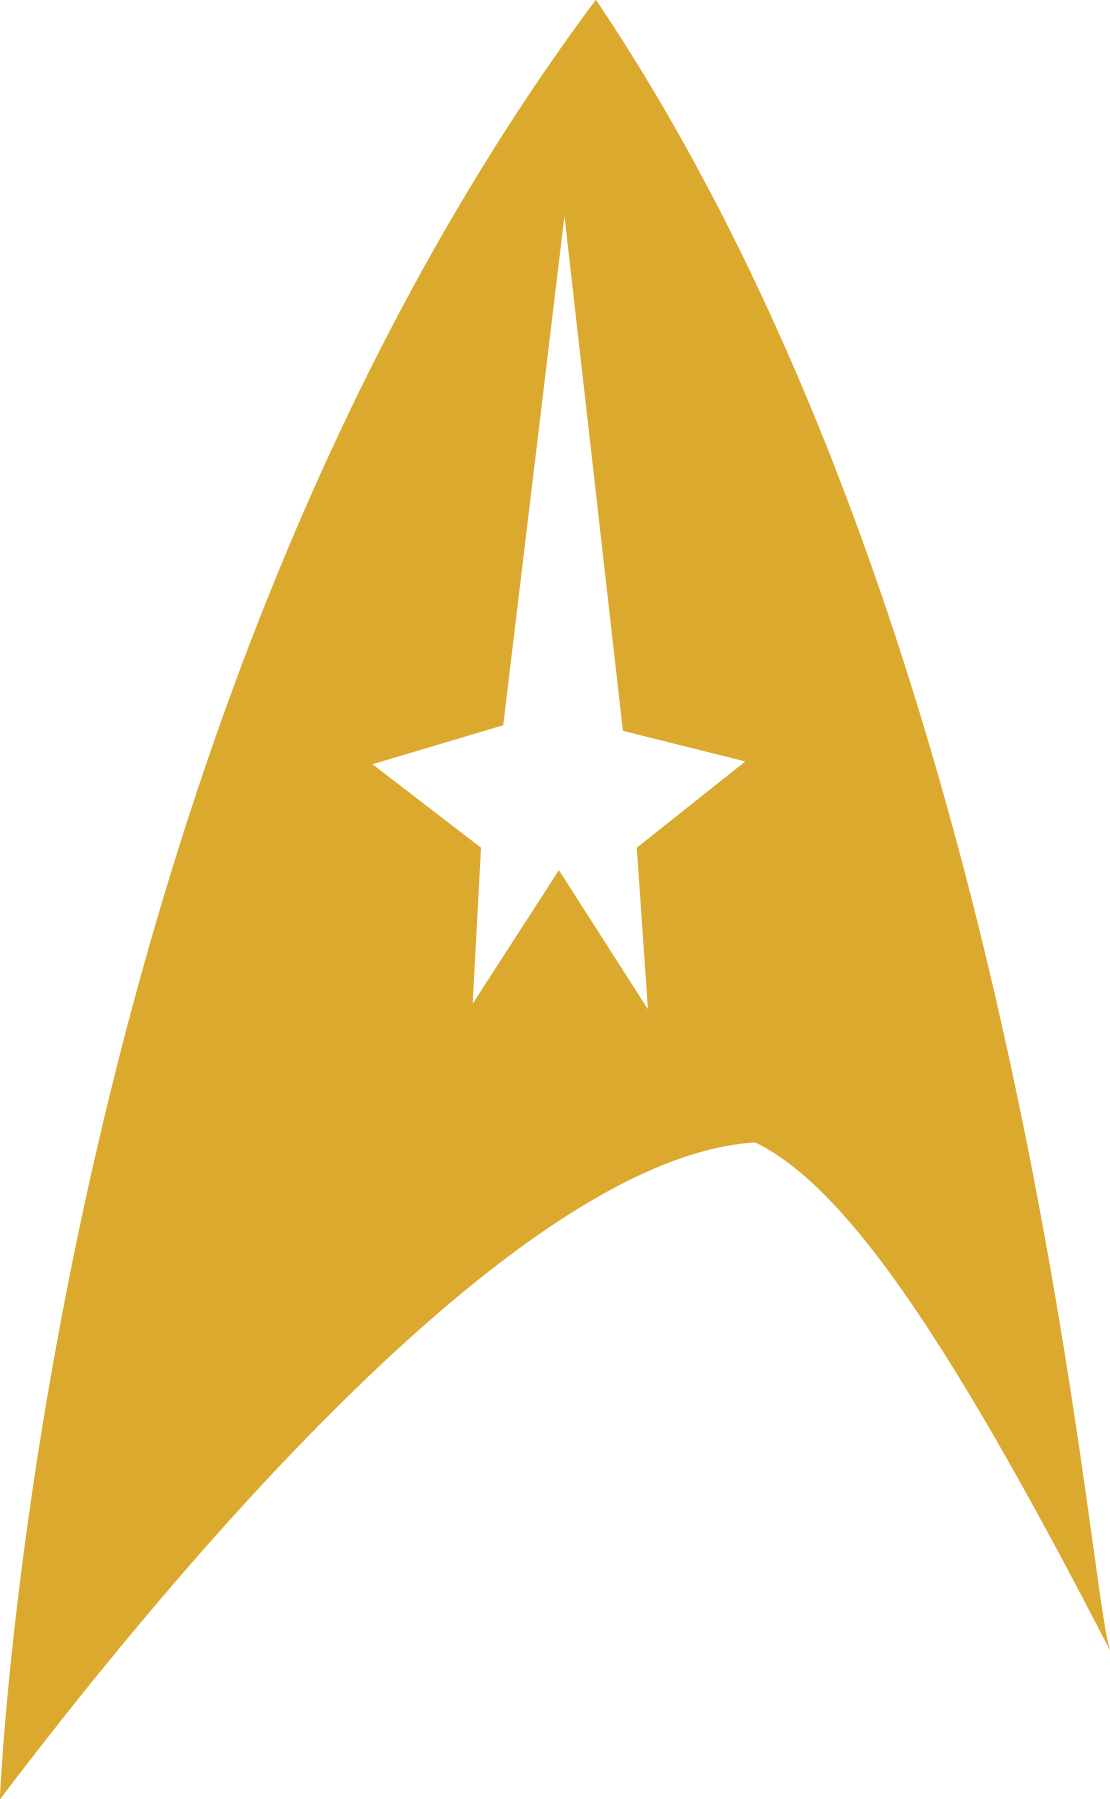 The best free Trek vector images. Download from 81 free vectors of Trek